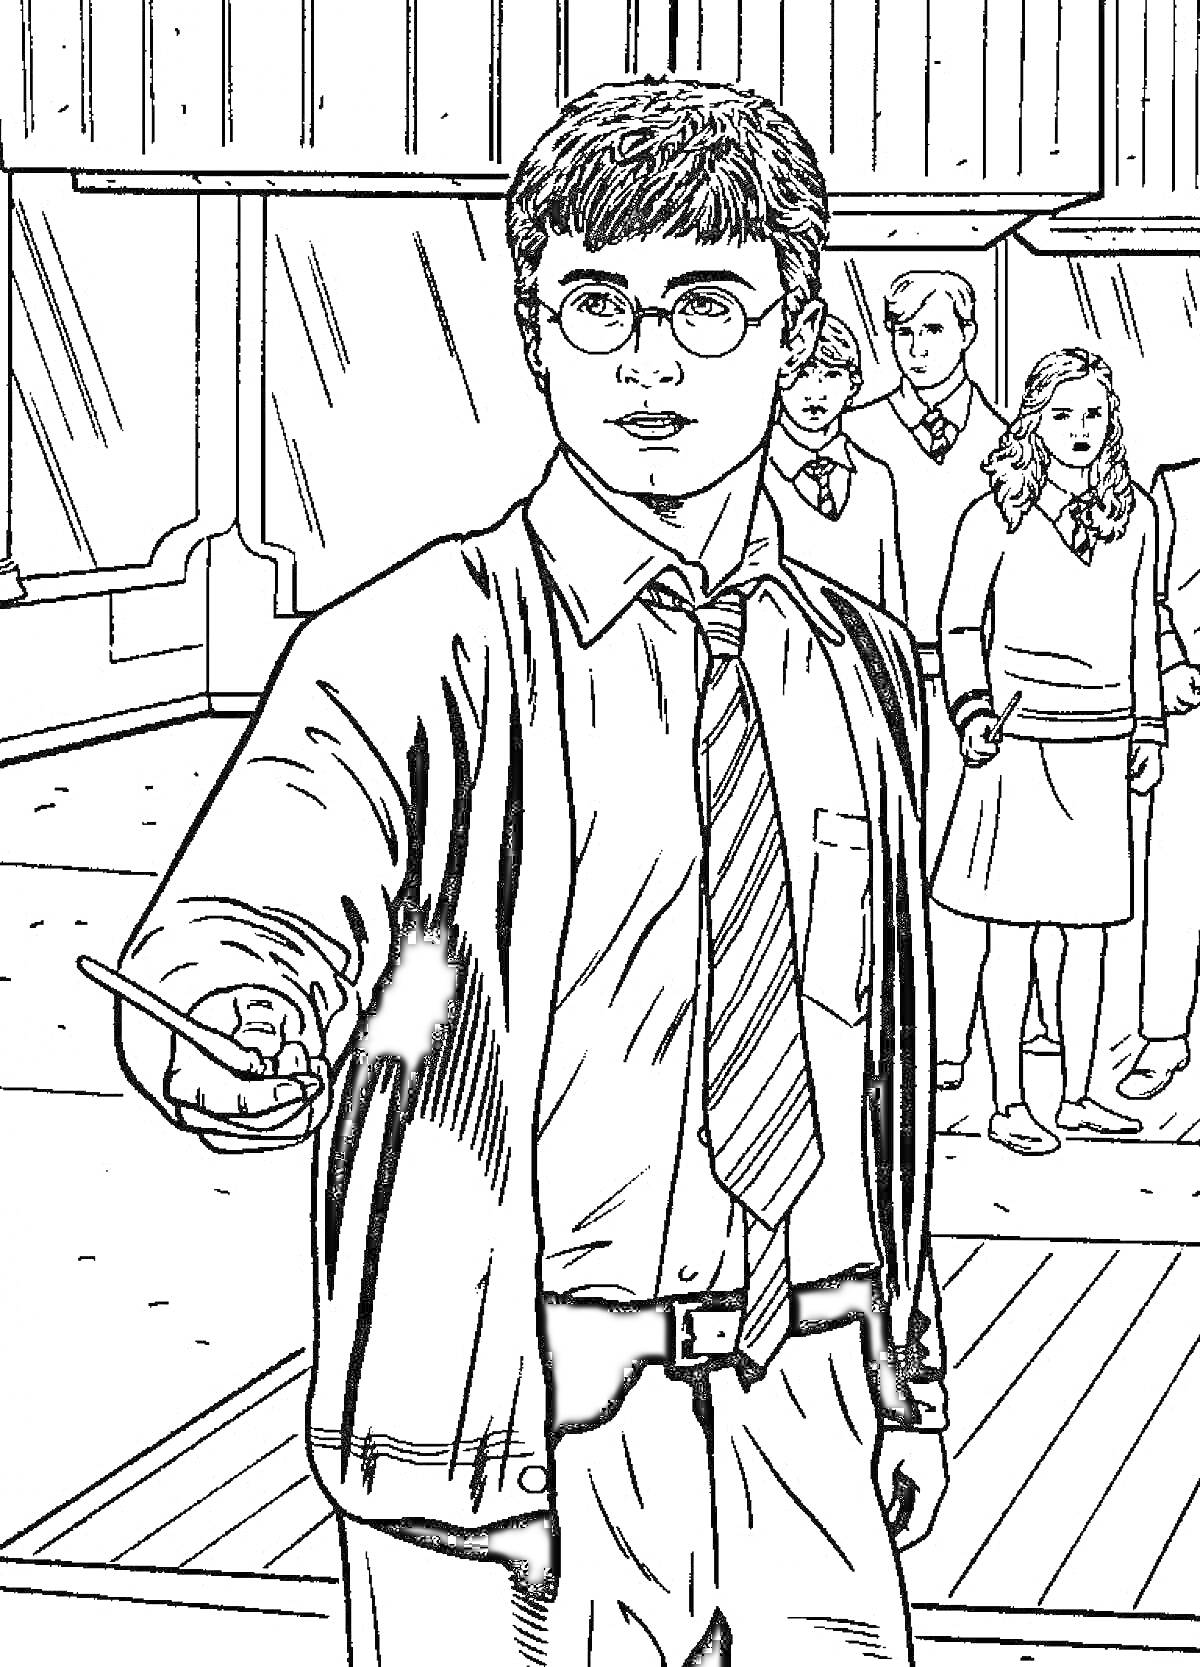 Раскраска Гарри Поттер с волшебной палочкой в руке на фоне других учеников, интерьер школы